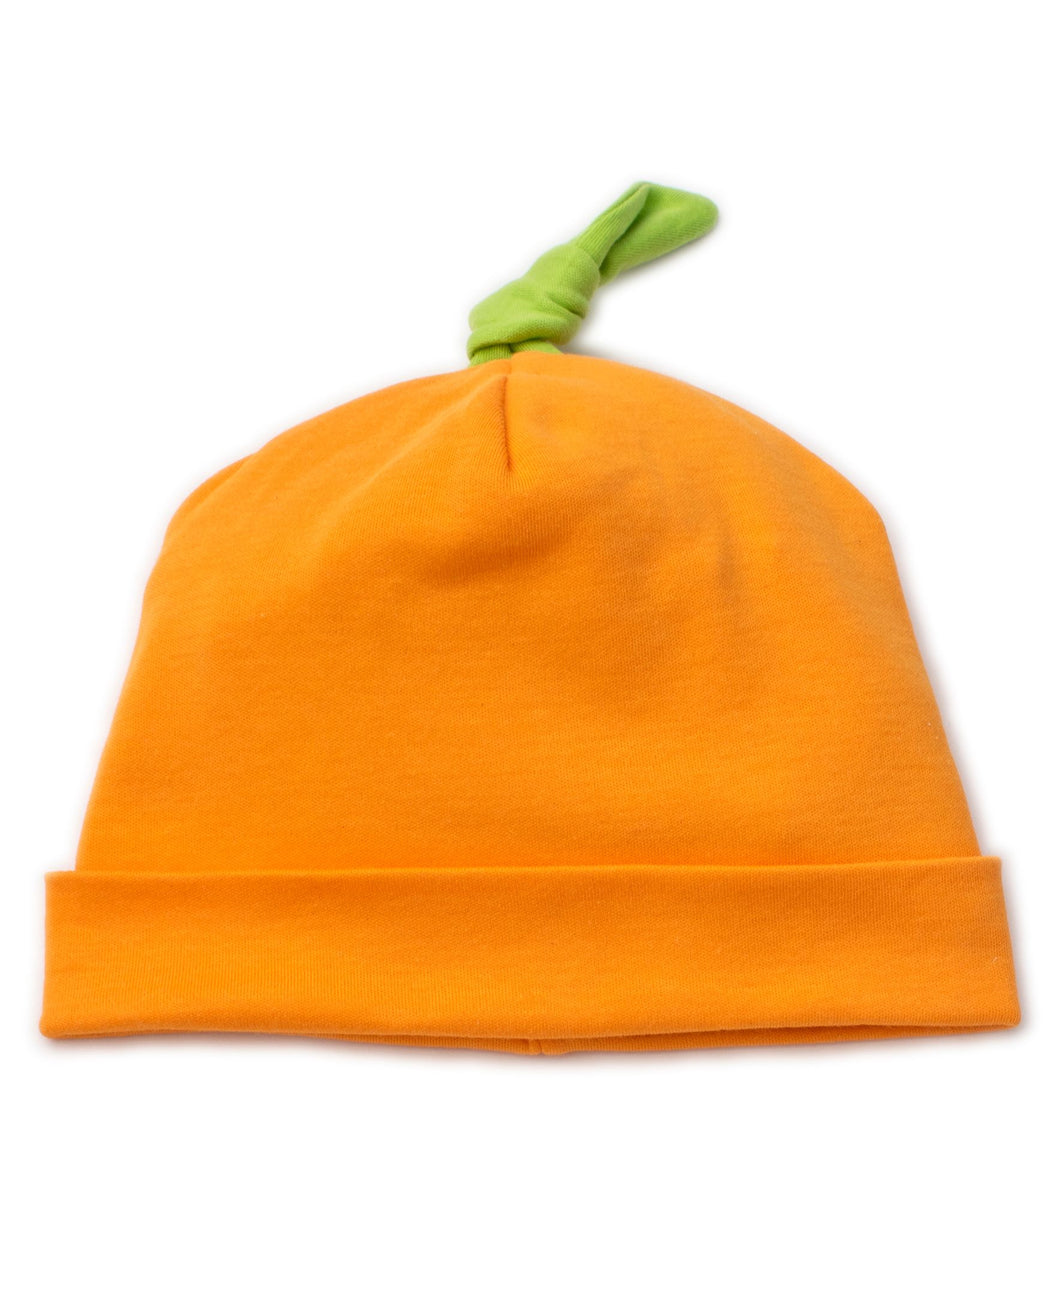 Costume Capers Hat - Orange